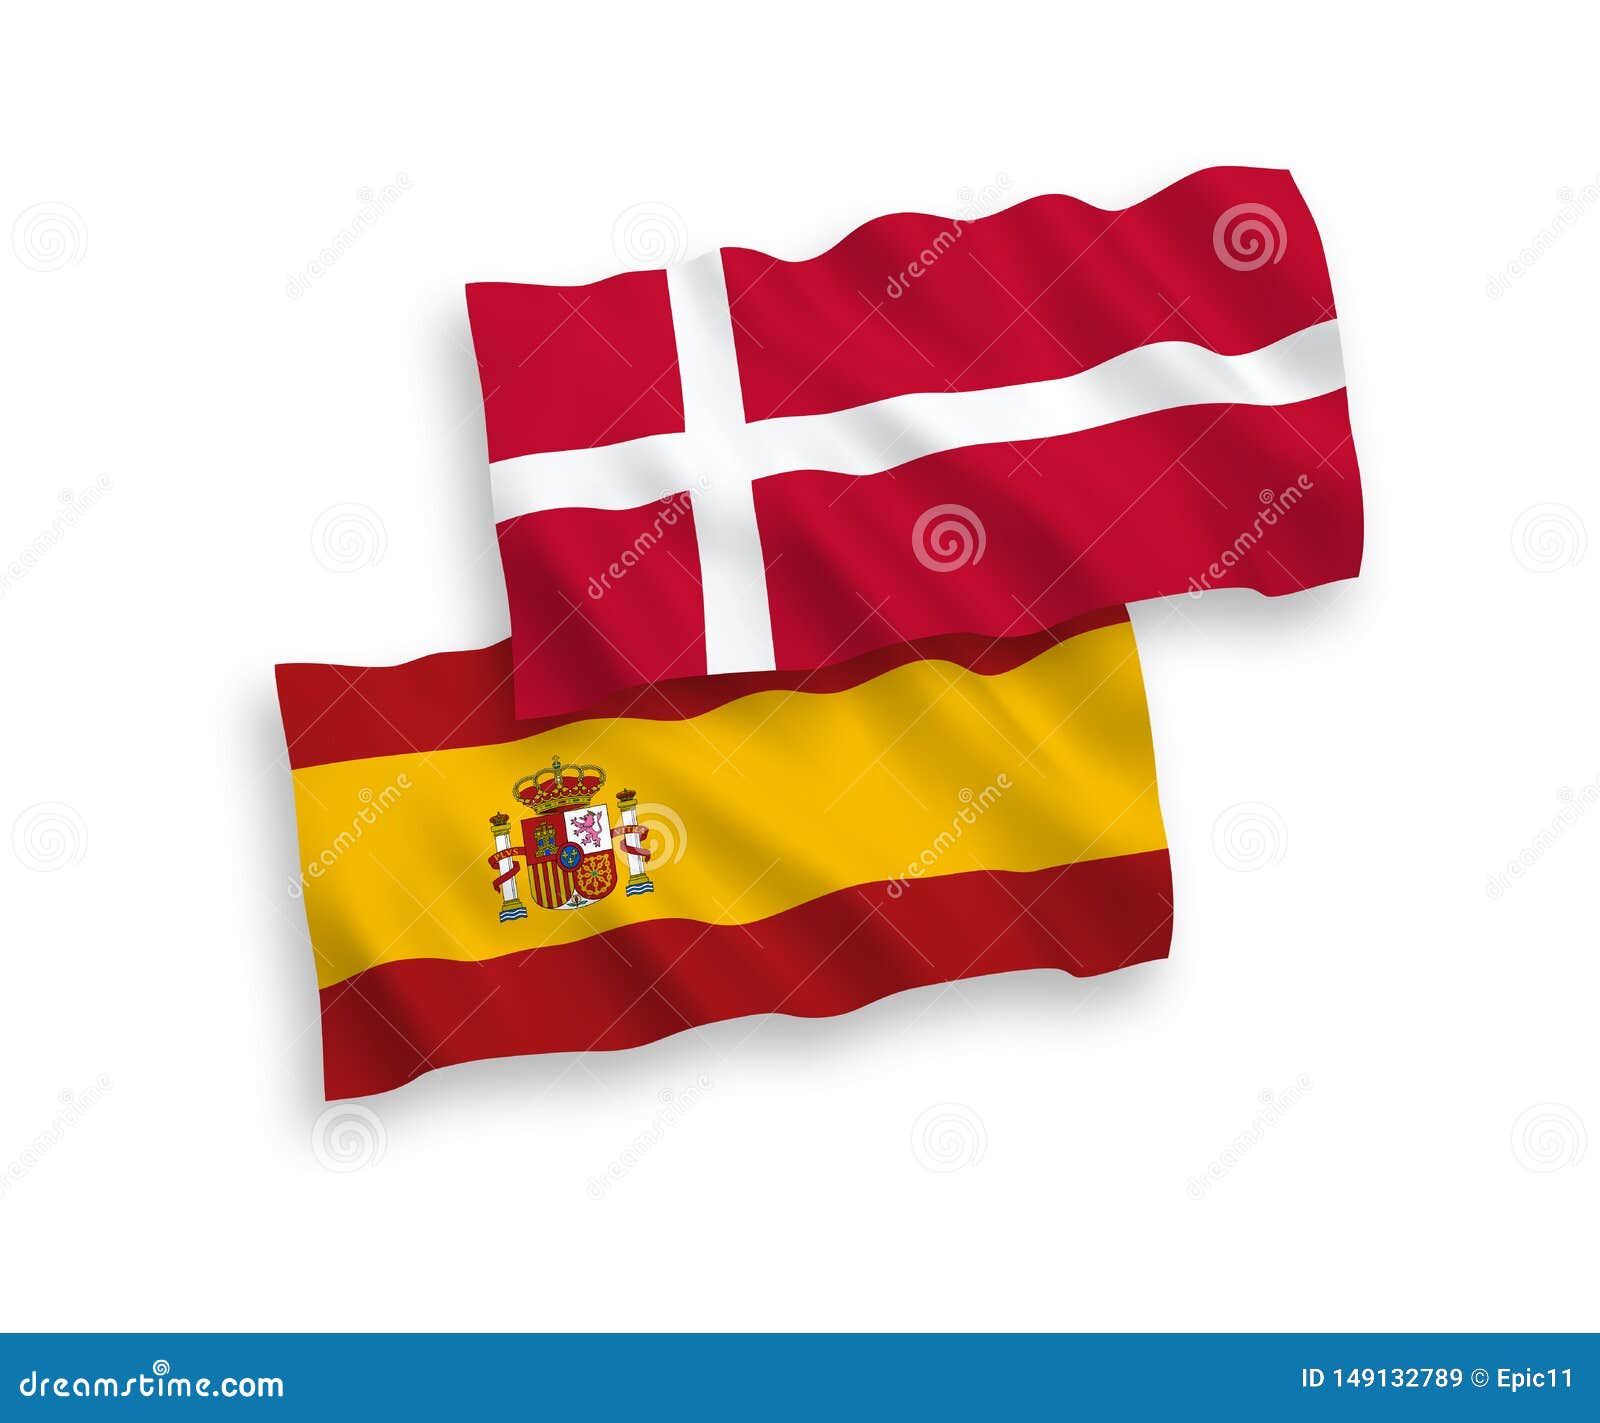 Spain denmark vs First EHF